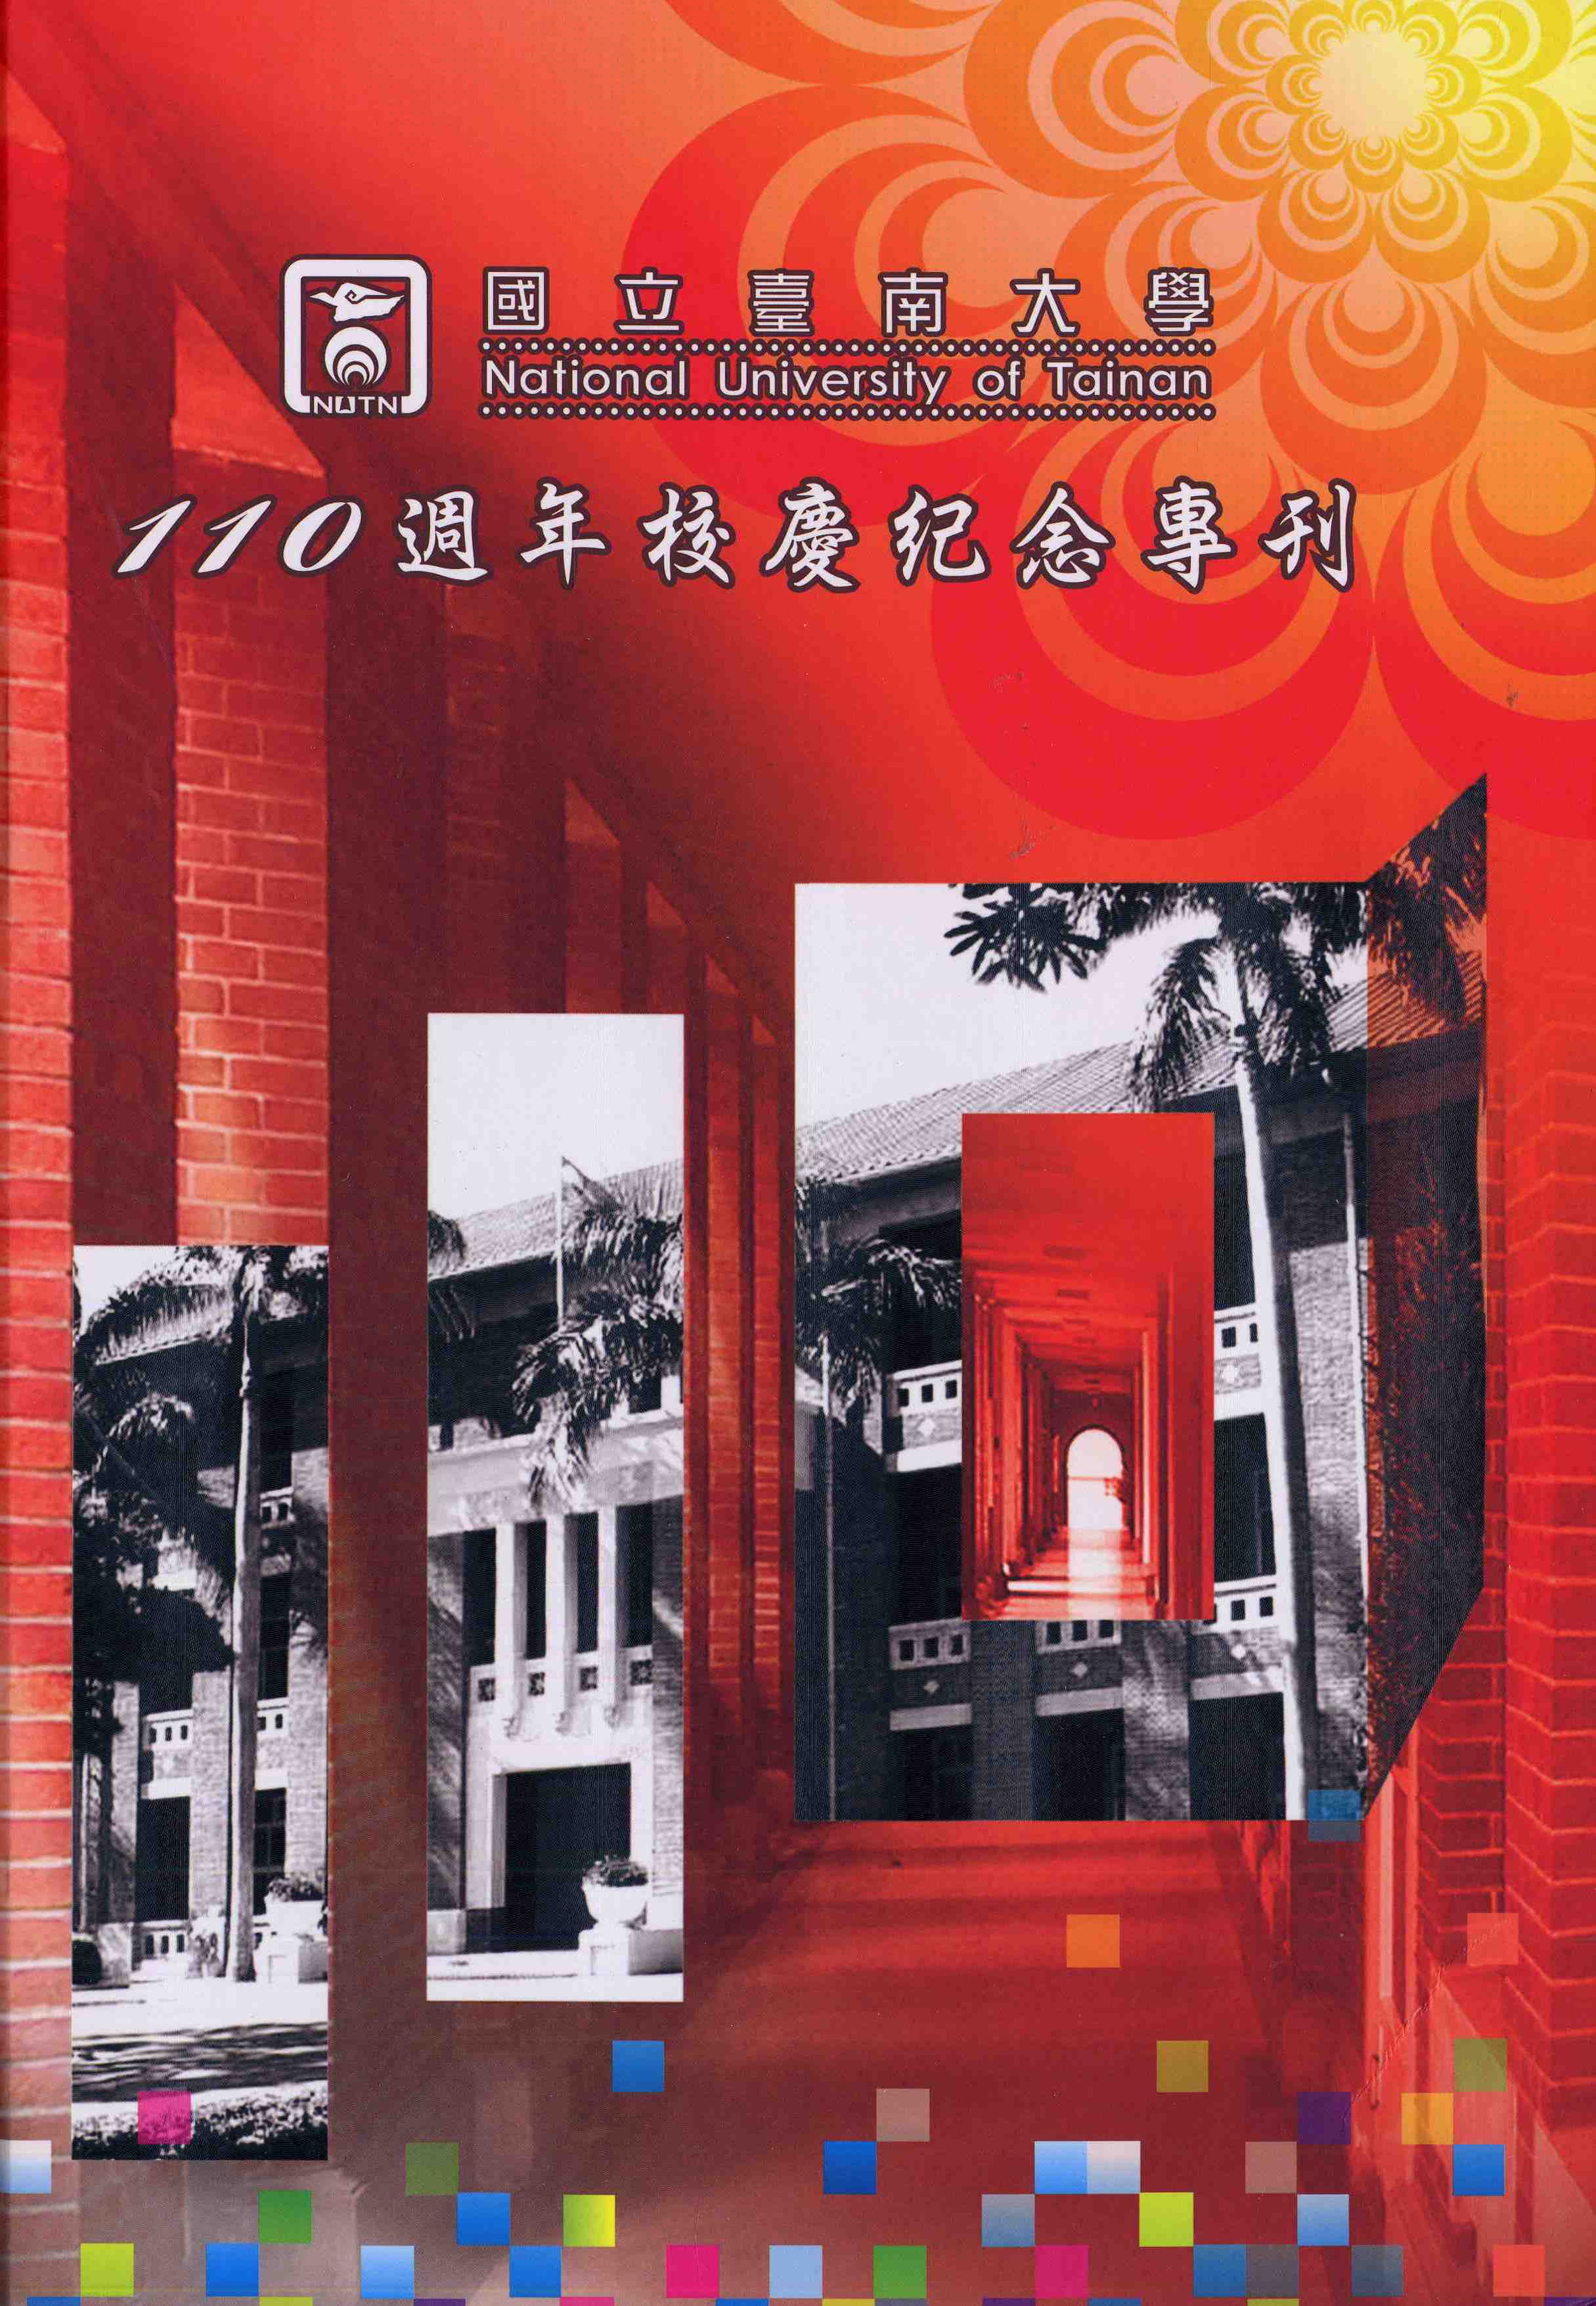 國立臺南大學110週年校慶紀念專刊